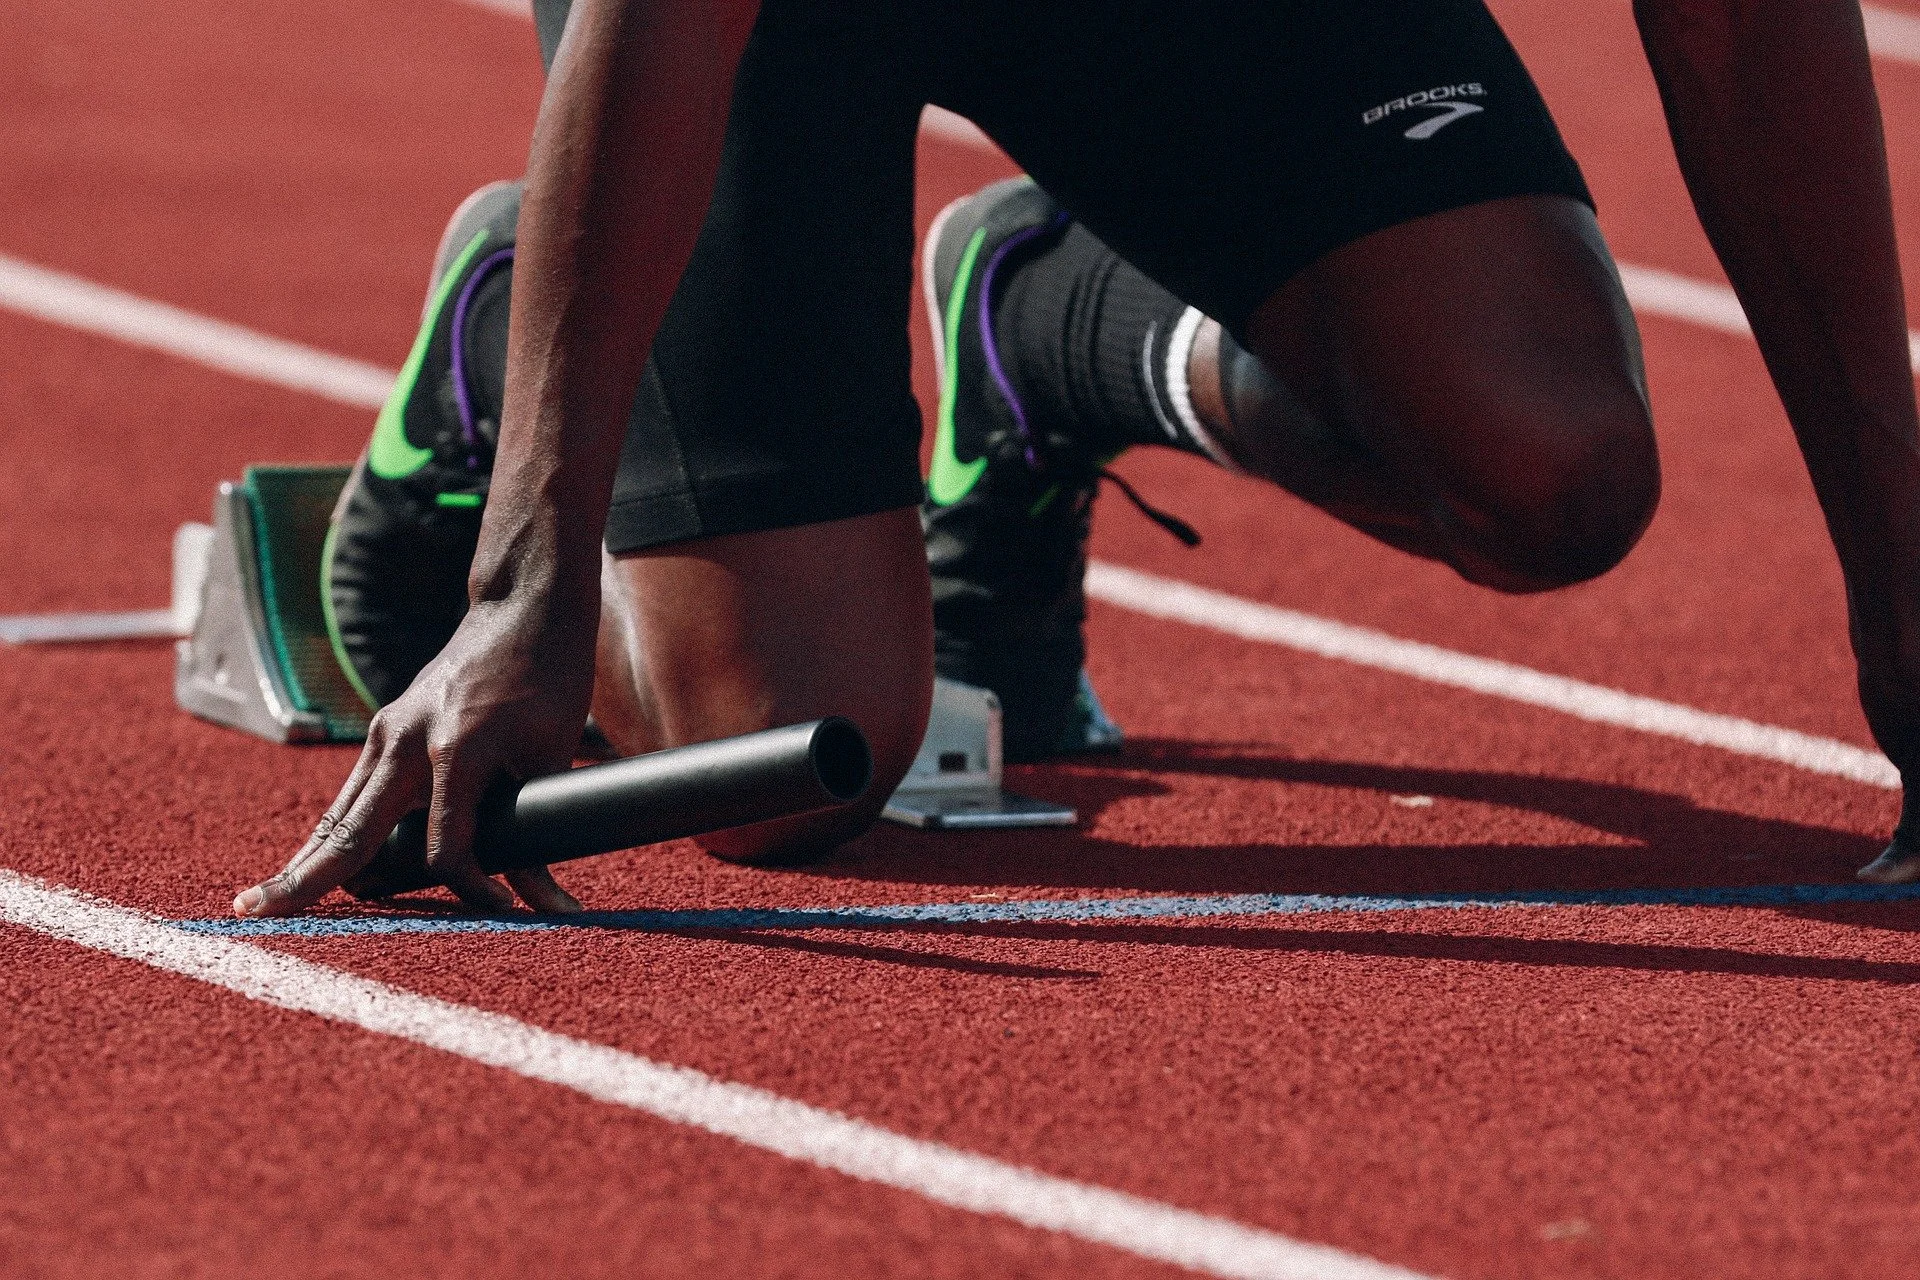 La marca ayuda constantemente a los deportistas nacionales, y hasta tiene un equipo de corredores apoyados por la marca, permitiéndoles alcanzar todas sus metas.